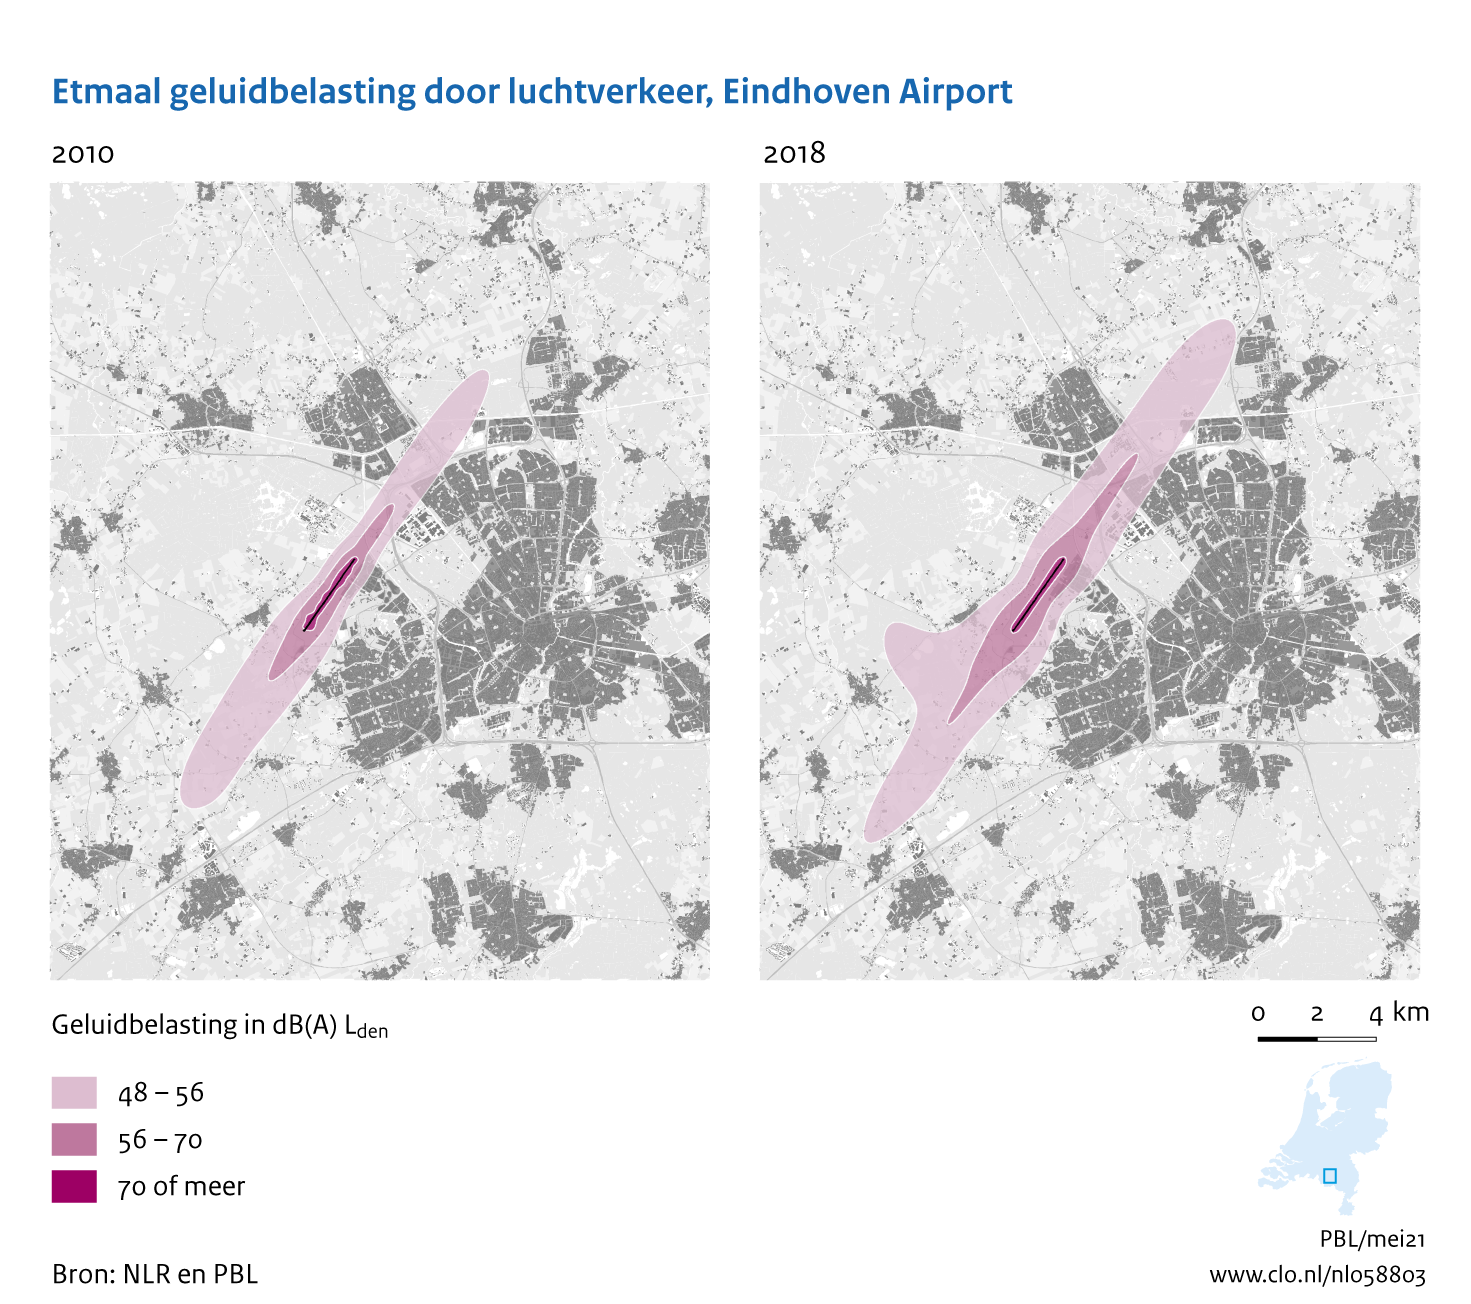 Figuur Etmaal geluidbelasting door luchtvaart, Eindhoven Airport, 2010-2018. In de rest van de tekst wordt deze figuur uitgebreider uitgelegd.